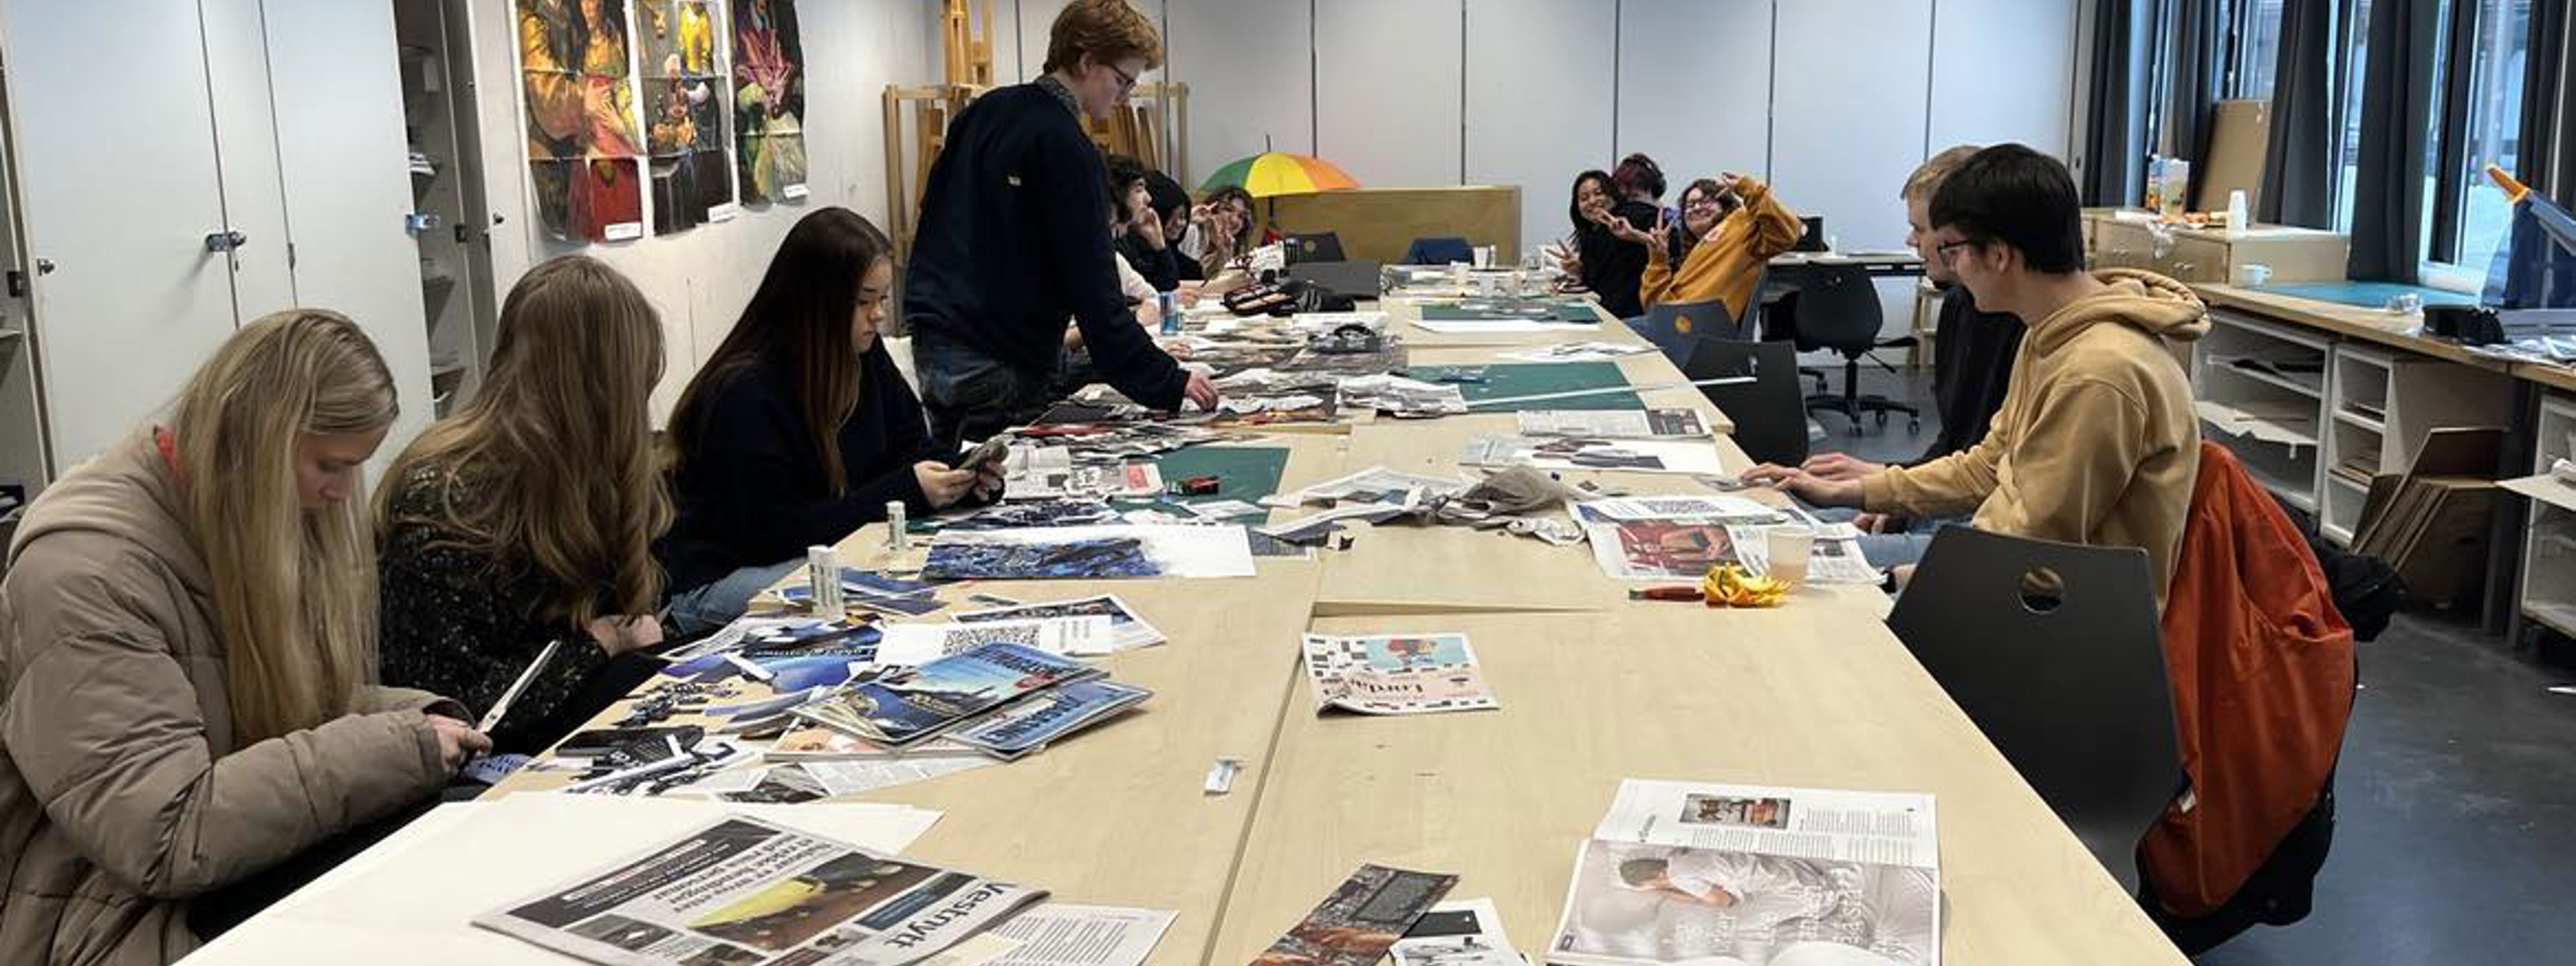 11 elevar sit ved eit langbord og klippar i aviser og vekeblad